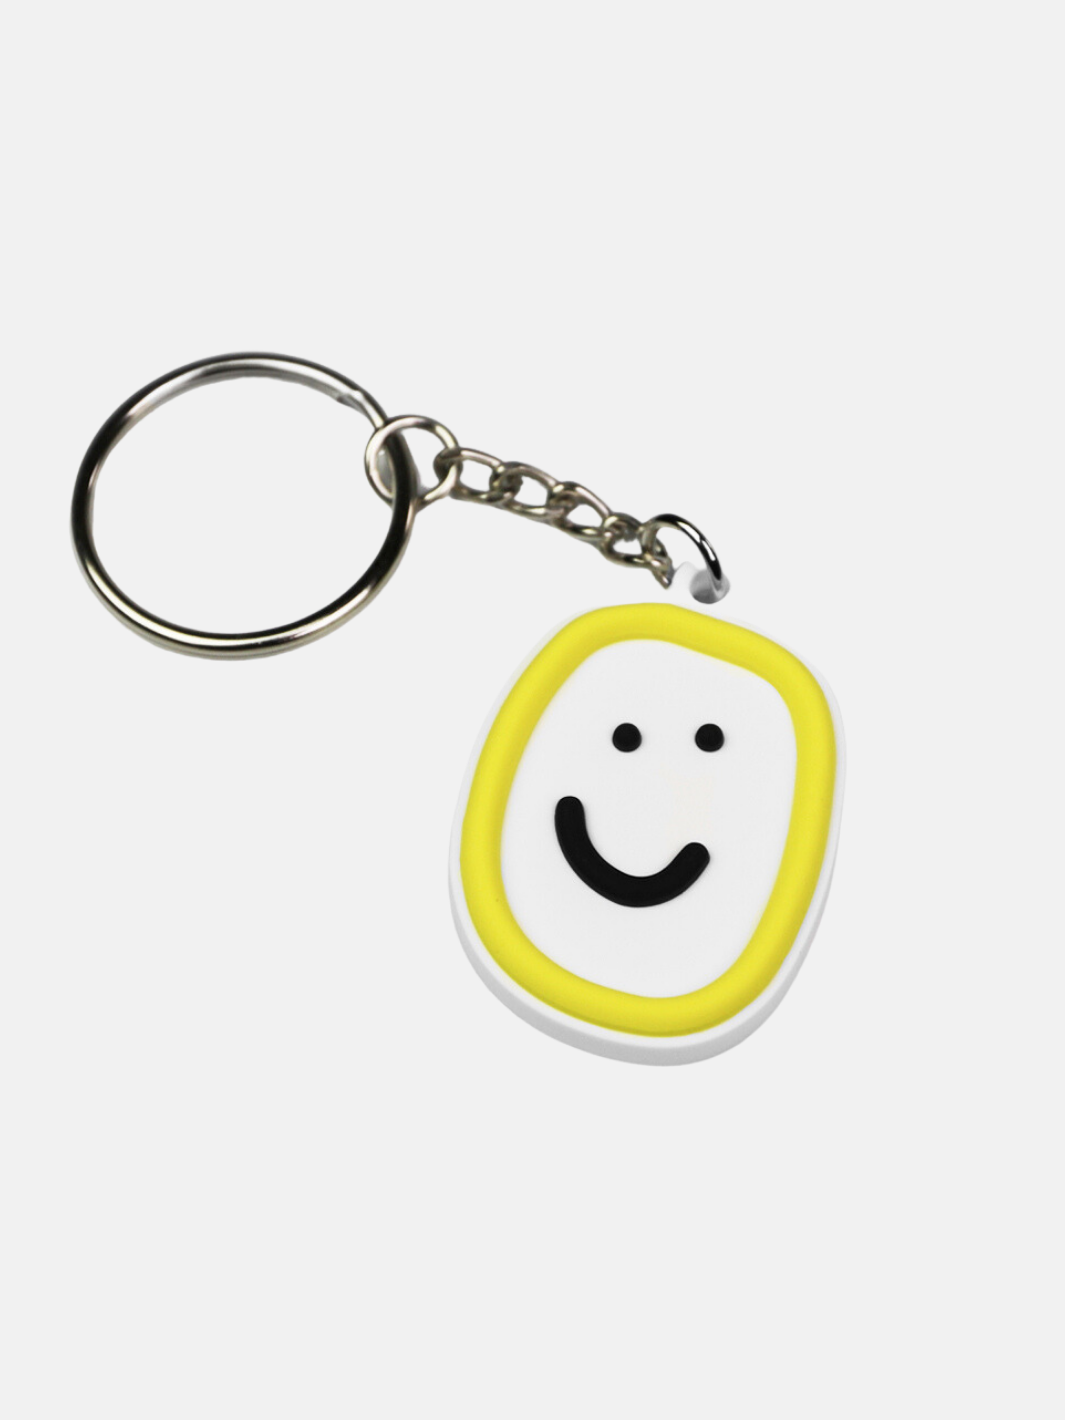 Happiness Keychain